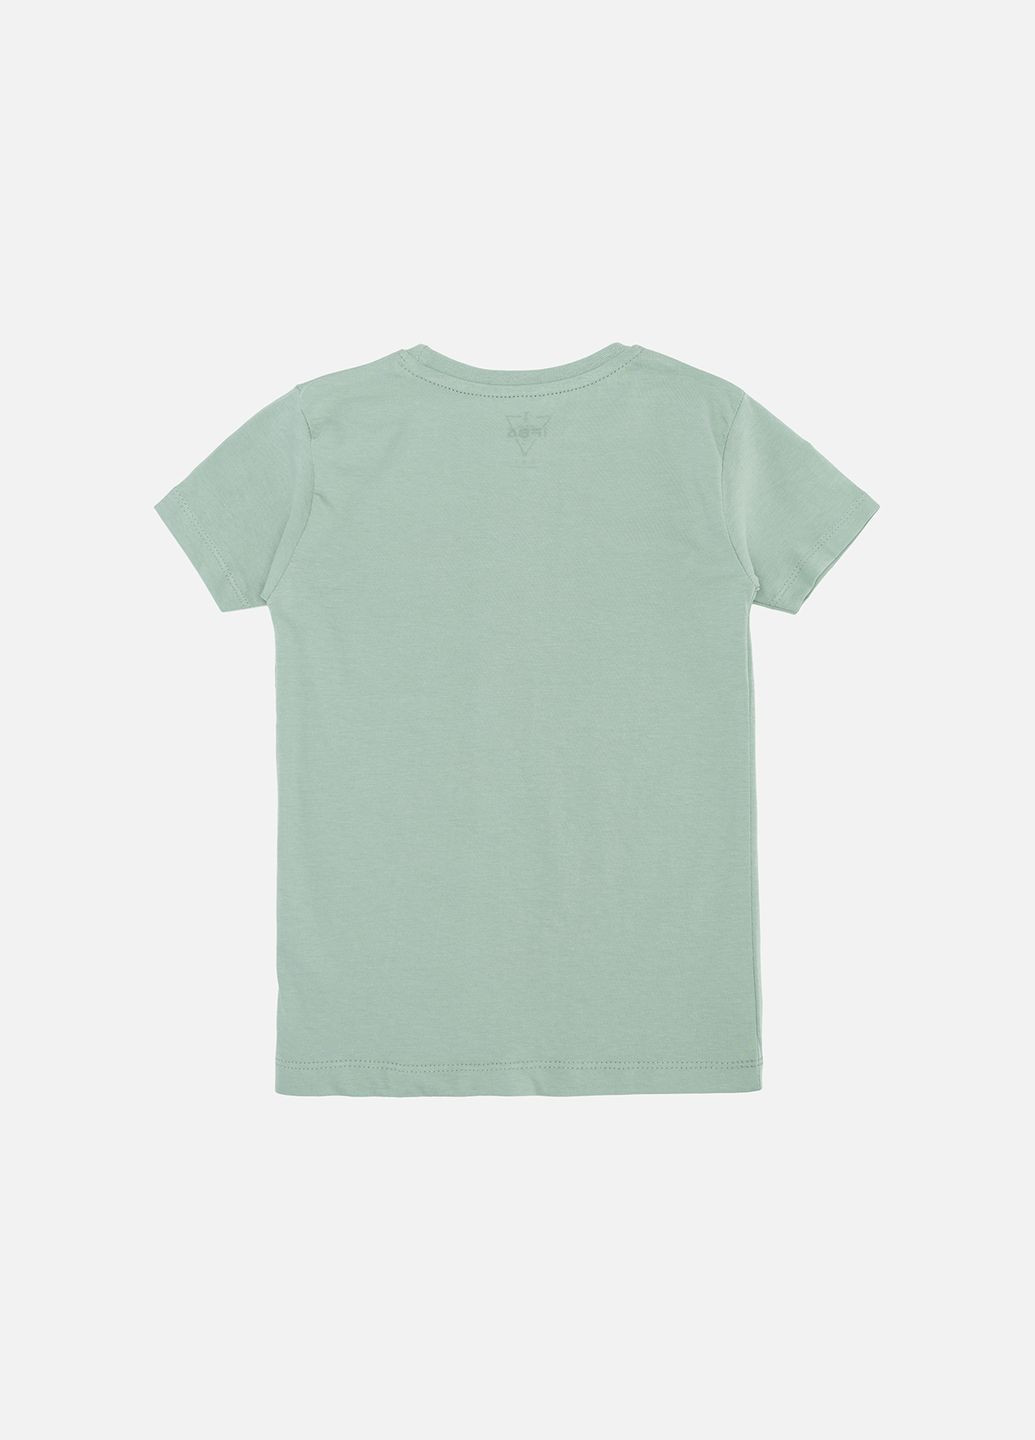 Оливковая летняя футболка с коротким рукавом для мальчика цвет оливковый цб-00244137 Ifba